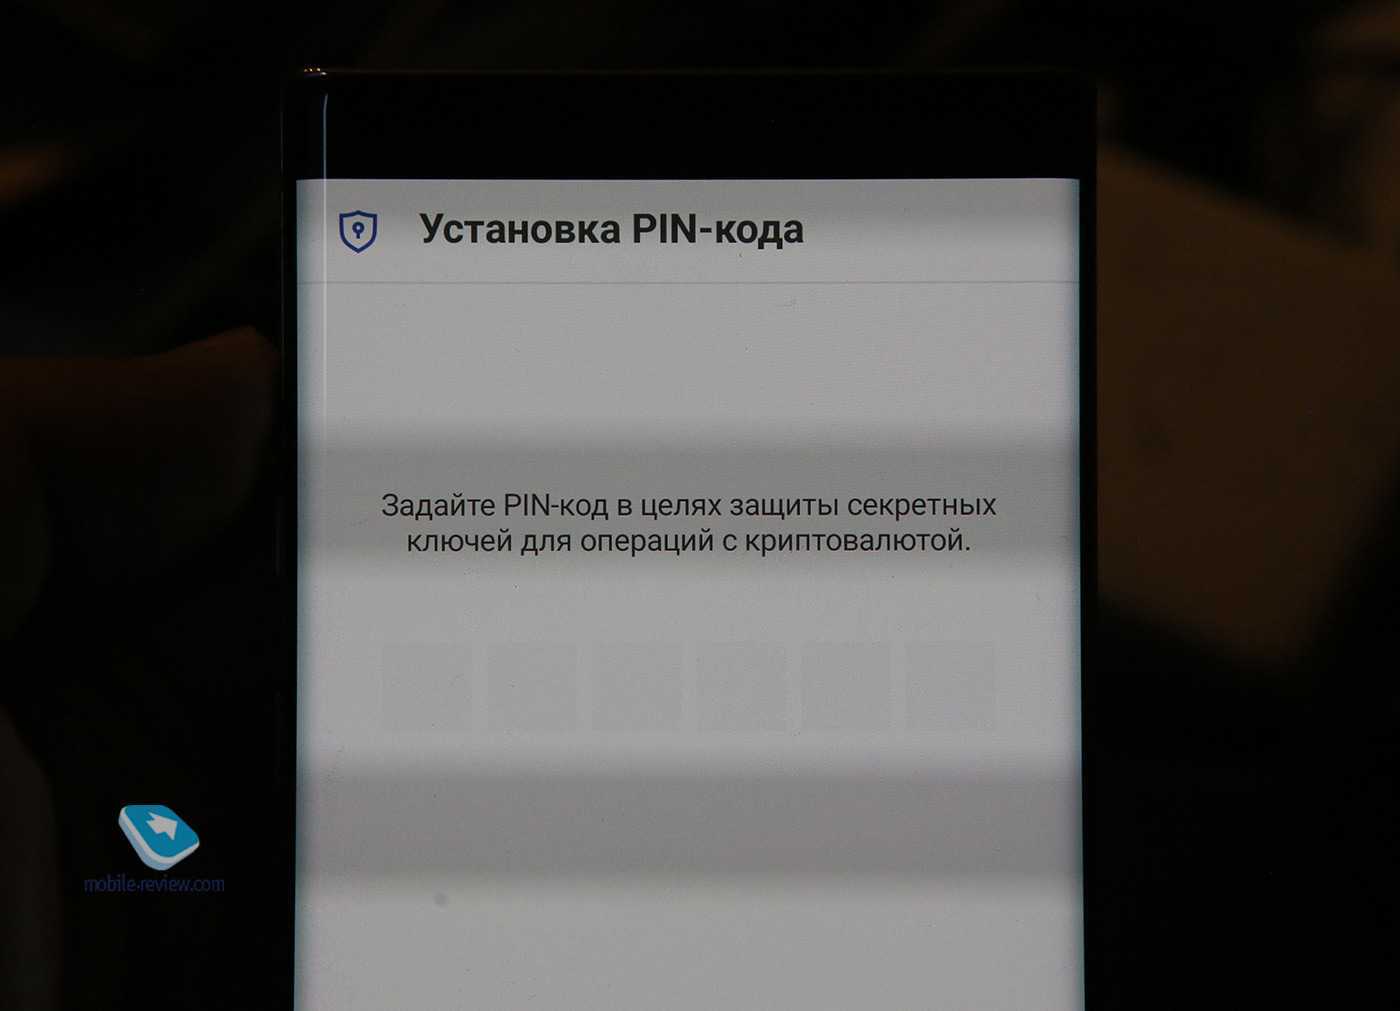 Как скрыть контакт в телефоне андроид и найти его тарифкин.ру
как скрыть контакт в телефоне андроид и найти его